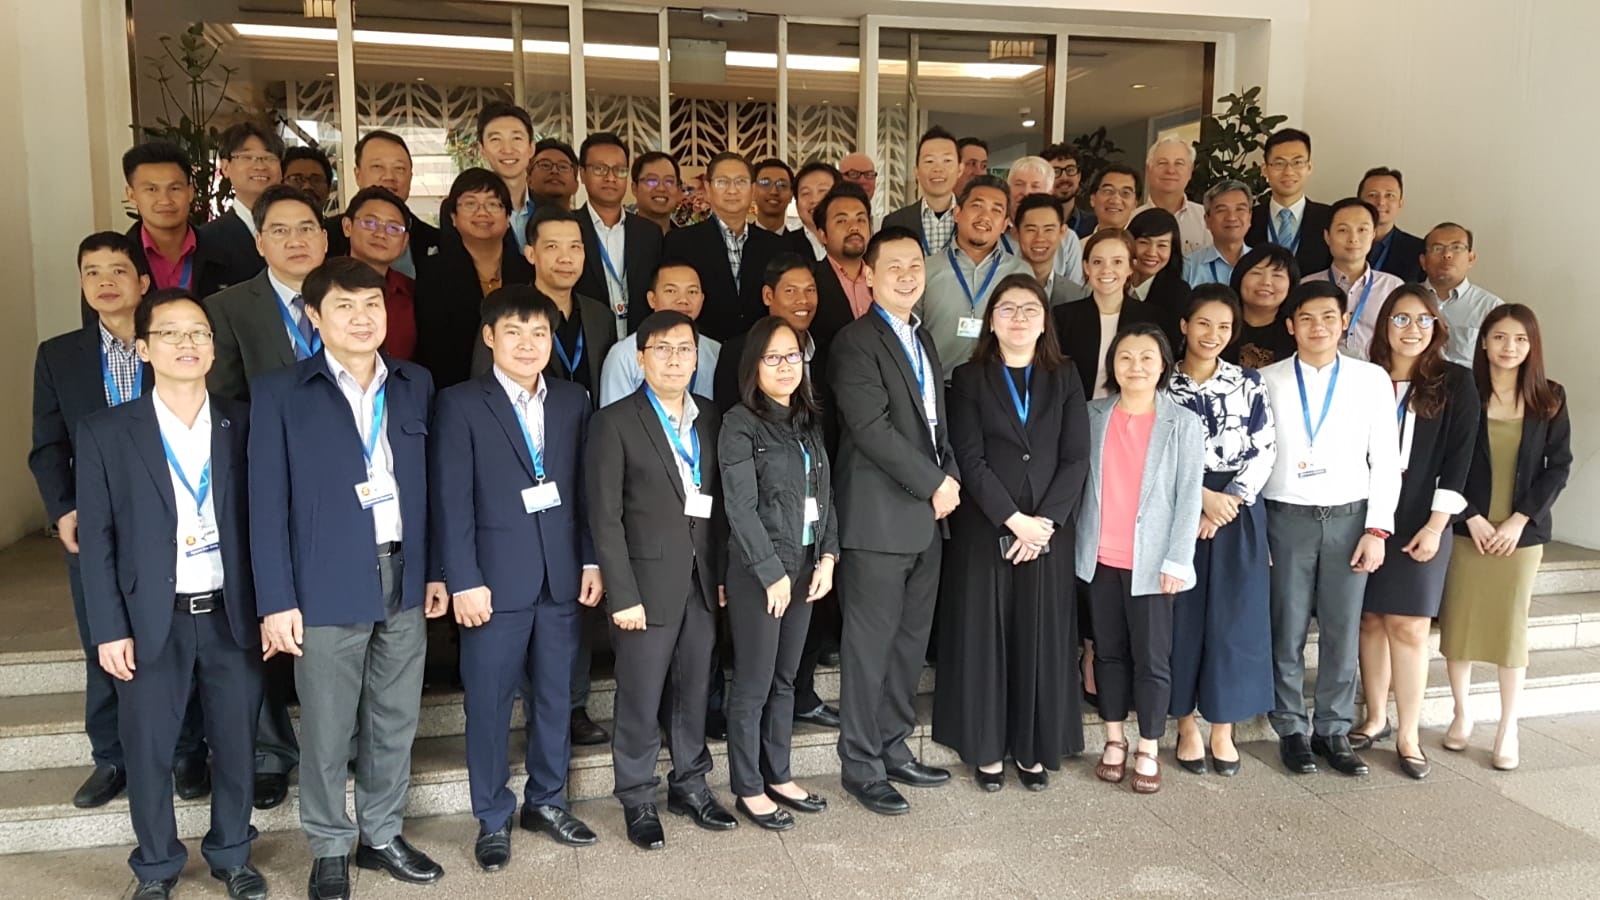 Hội nghị trao đổi kỹ thuật thuộc Dự án triển khai thử nghiệm SWIM trong khu vực ASEAN